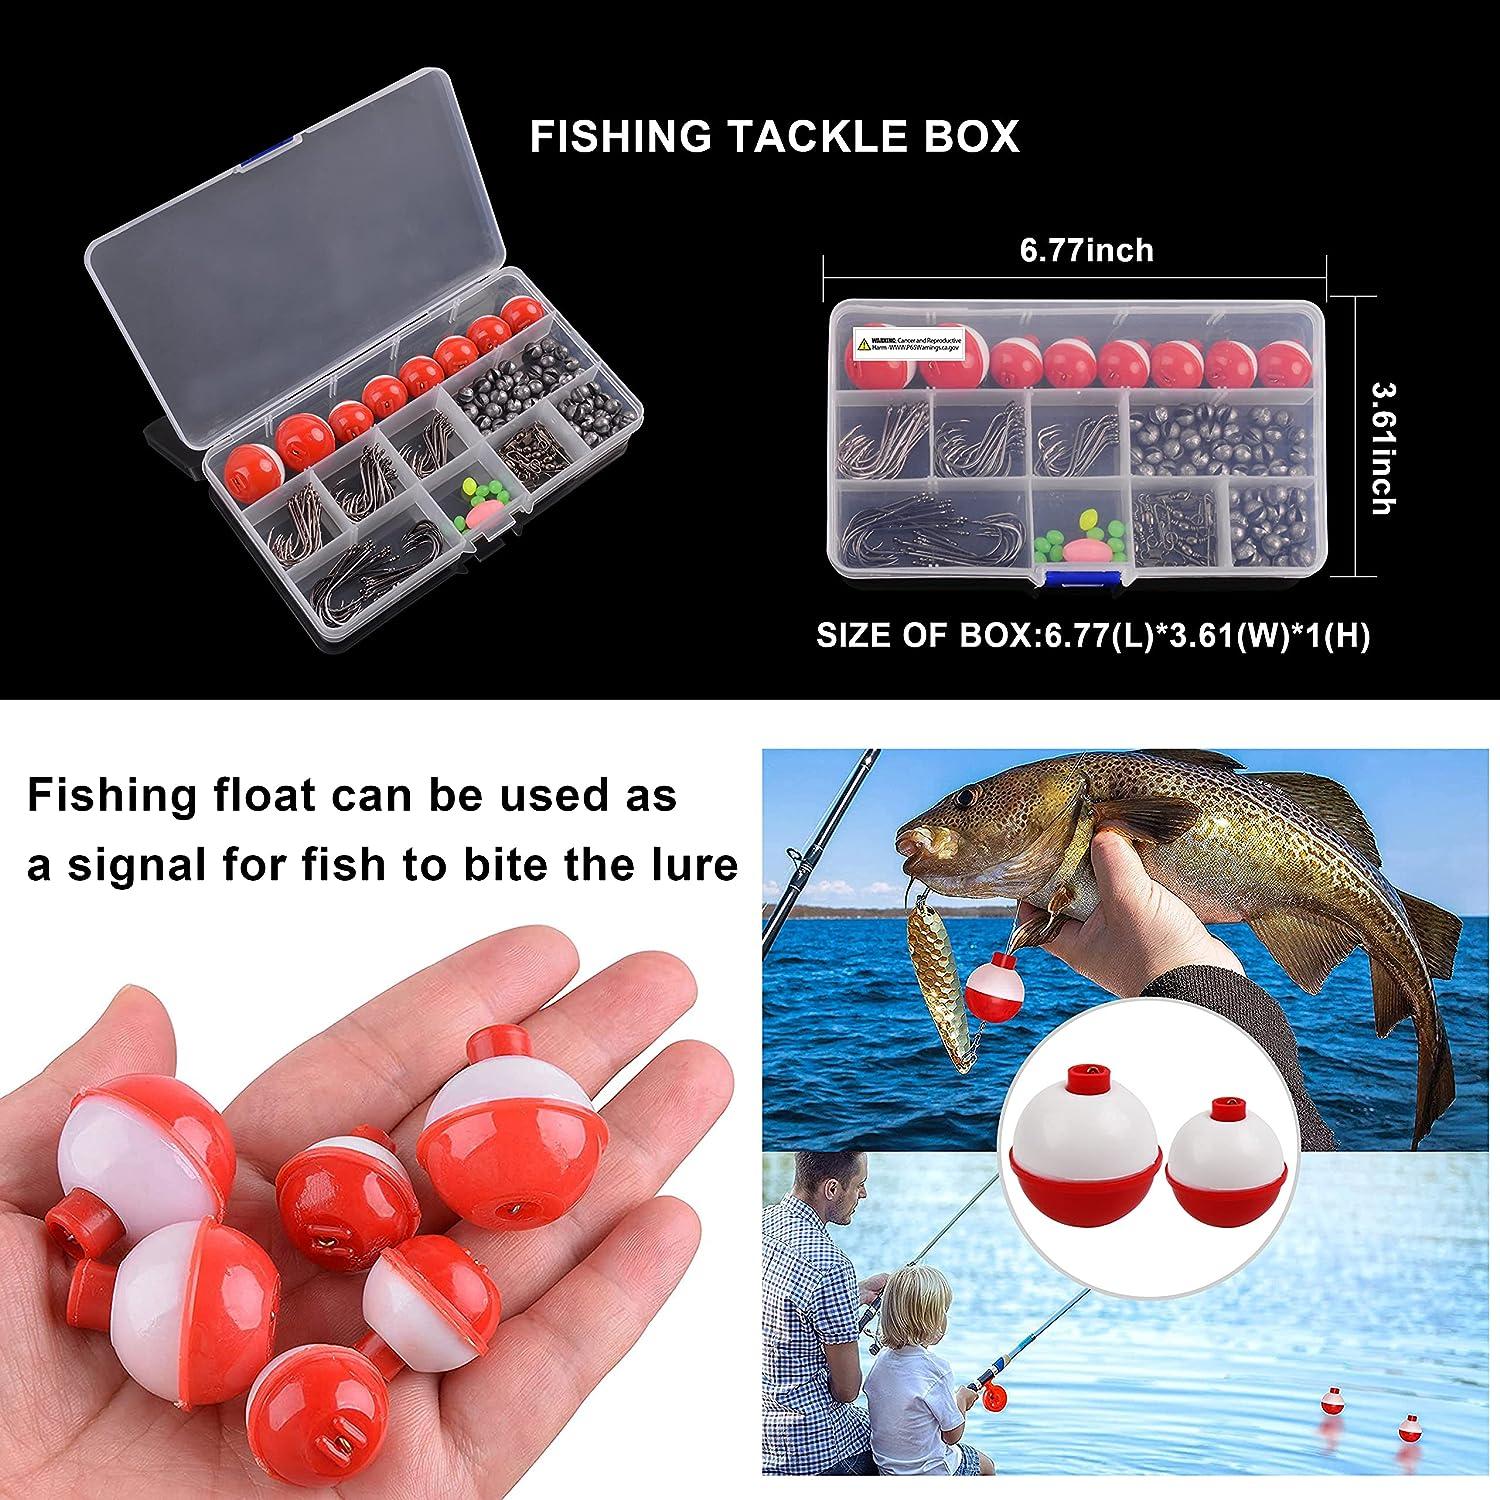 Basic Fishing Kit